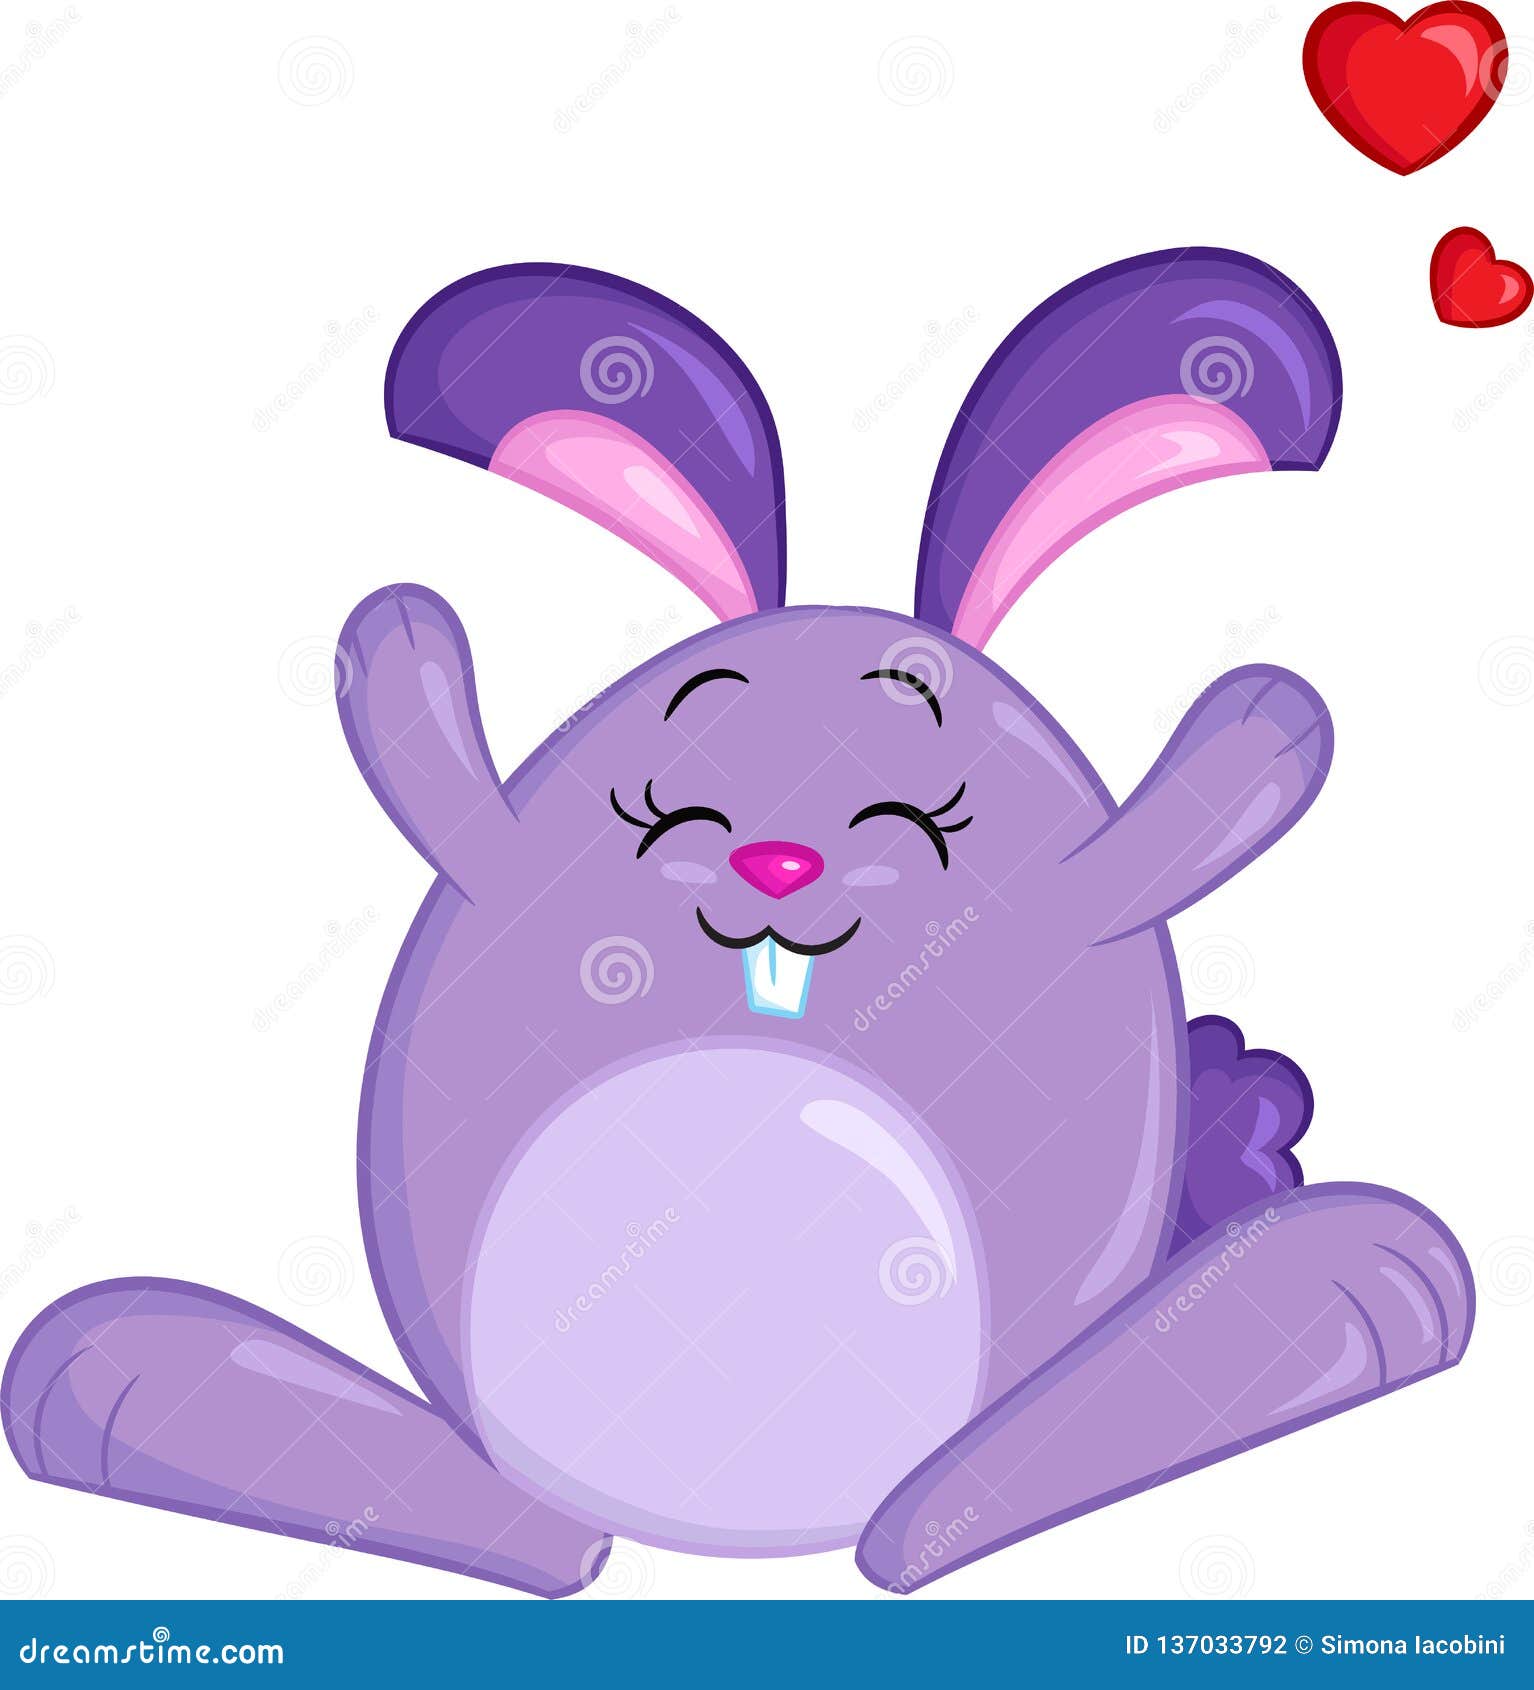 Disegno Di Colore Di Kawaii Di Un Coniglio Di Coniglietto Con I Cuori Per Il Libro Per Bambini La Carta Del Biglietto Di S Va Illustrazione Vettoriale Illustrazione Di Background Fairy